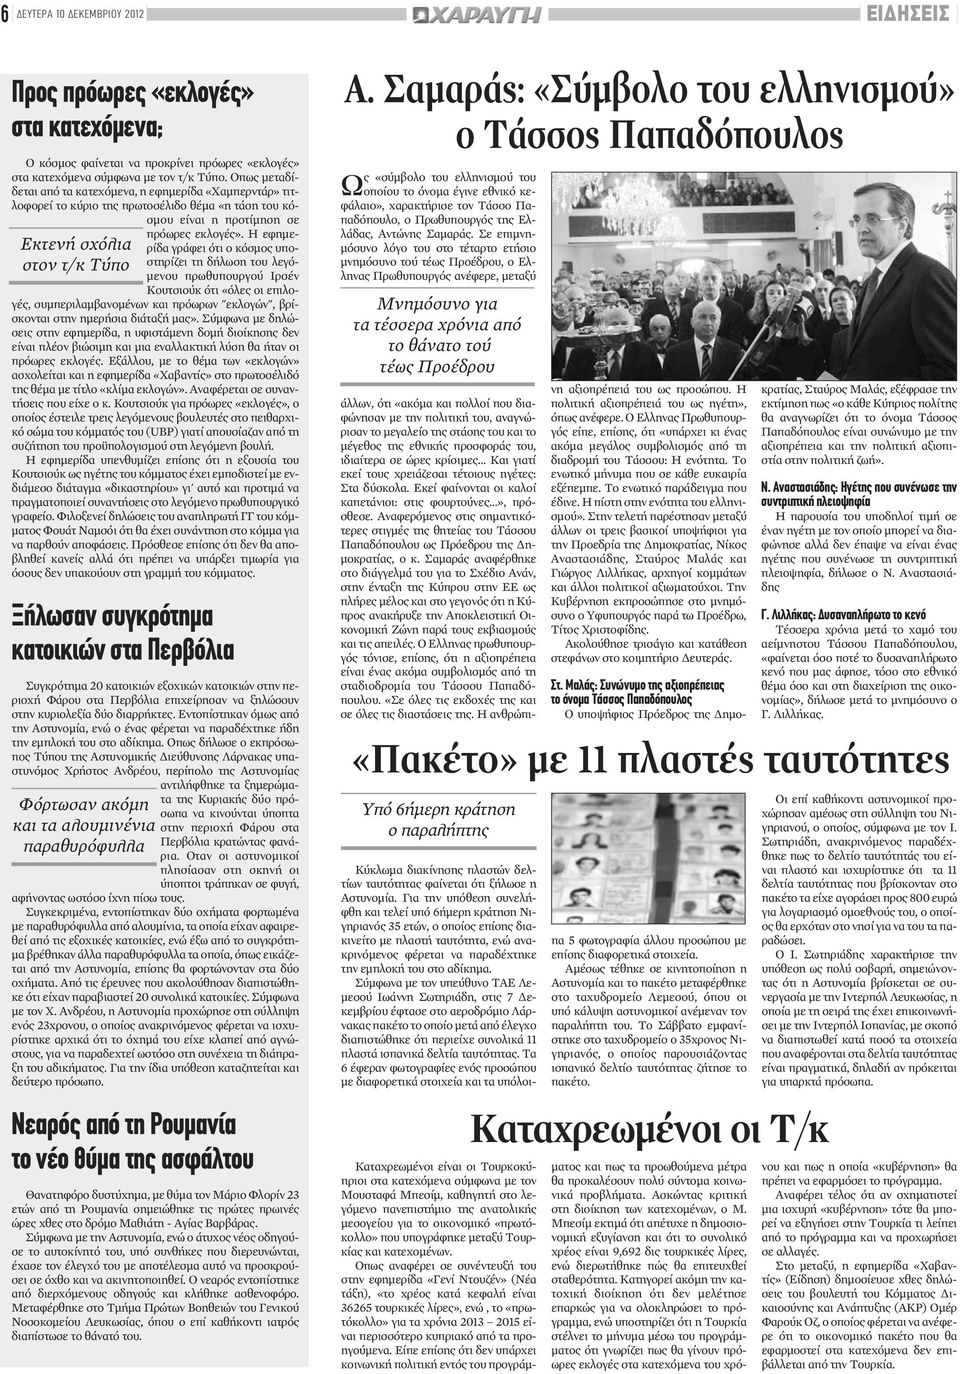 Η εφημερίδα γράφει ότι ο κόσμος υποστηρίζει τη δήλωση του λεγόμενου πρωθυπουργού Ιρσέν Κουτσιούκ ότι «όλες οι επιλογές, συμπεριλαμβανομένων και πρόωρων "εκλογών", βρίσκονται στην ημερήσια διάταξή